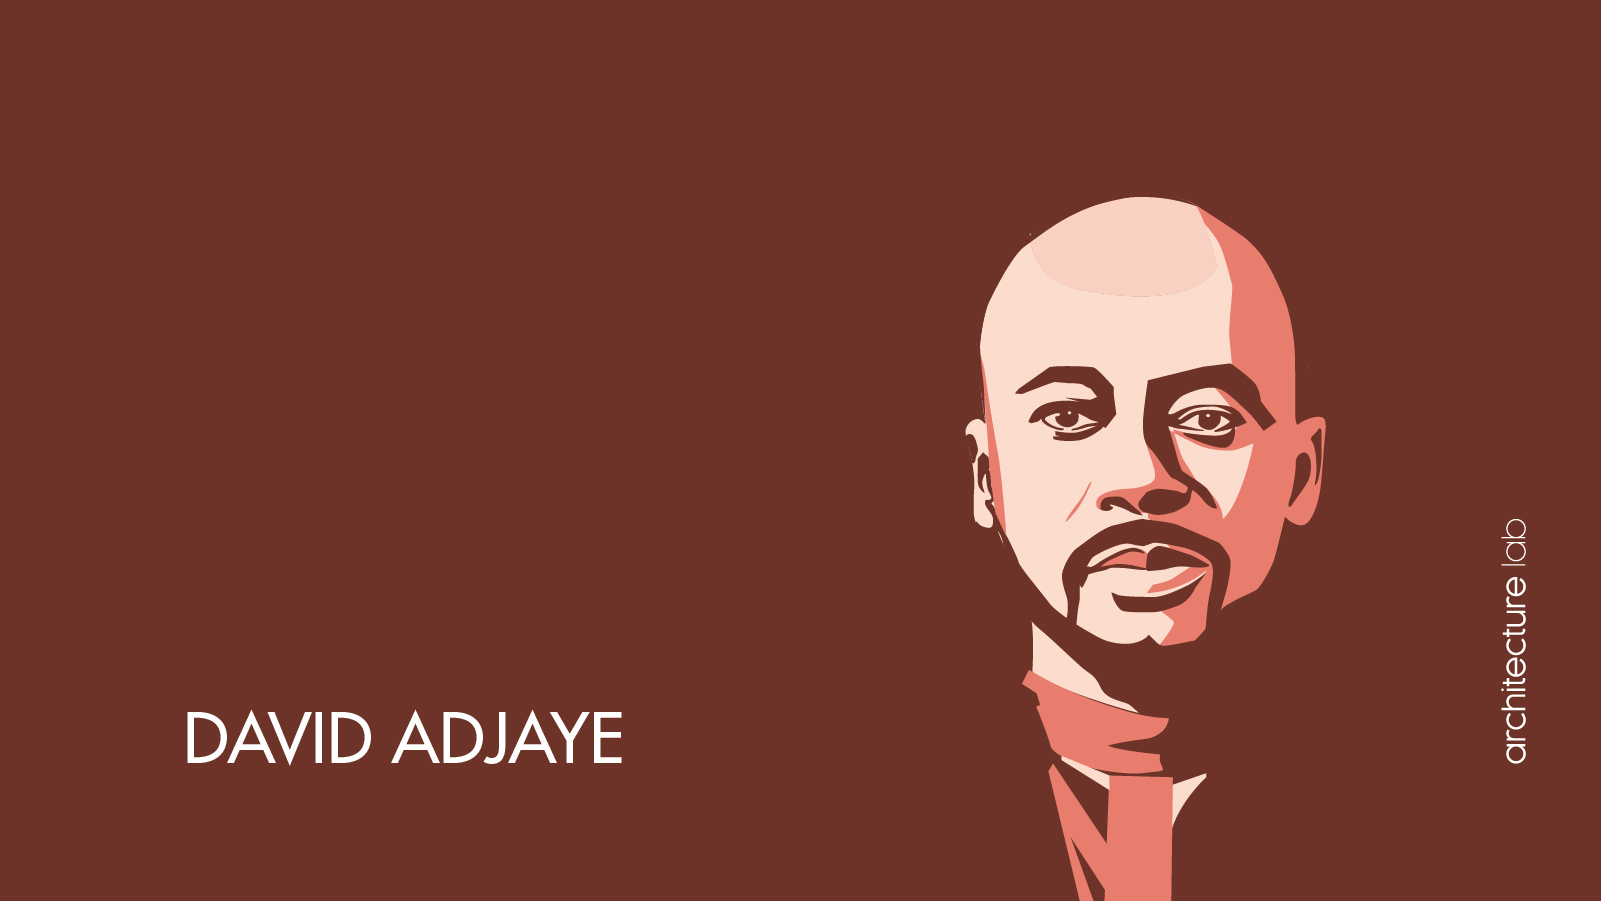 David adjaye: biography, works, awards